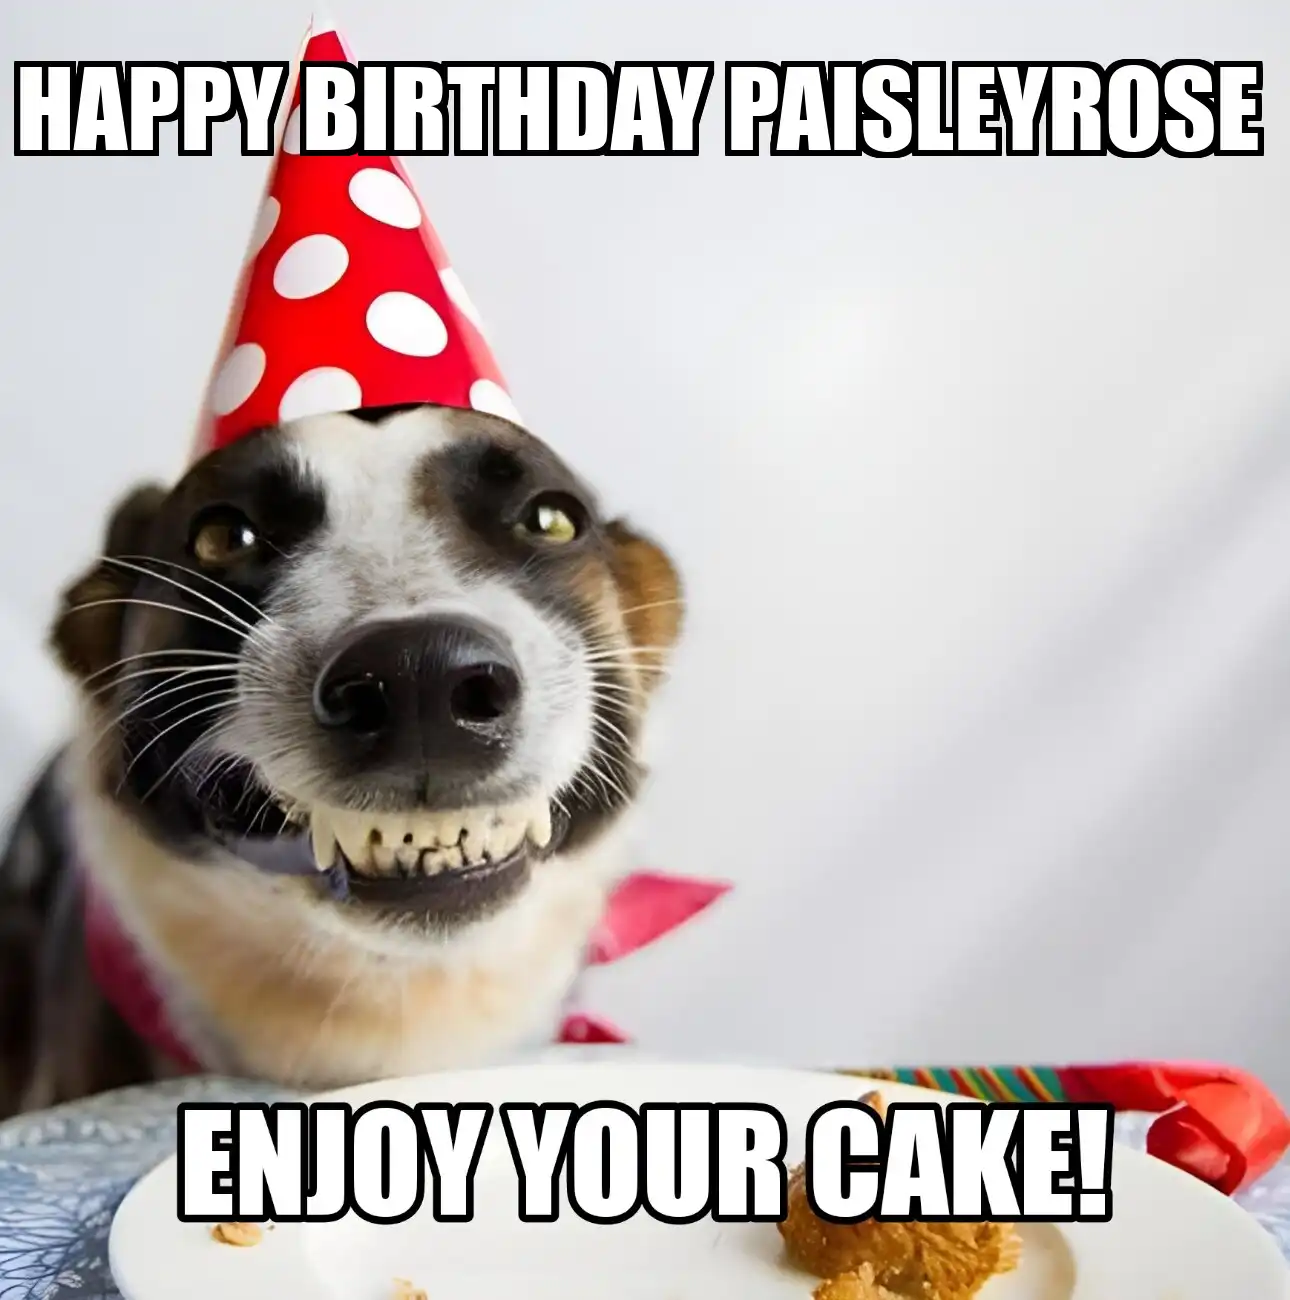 Happy Birthday Paisleyrose Enjoy Your Cake Dog Meme